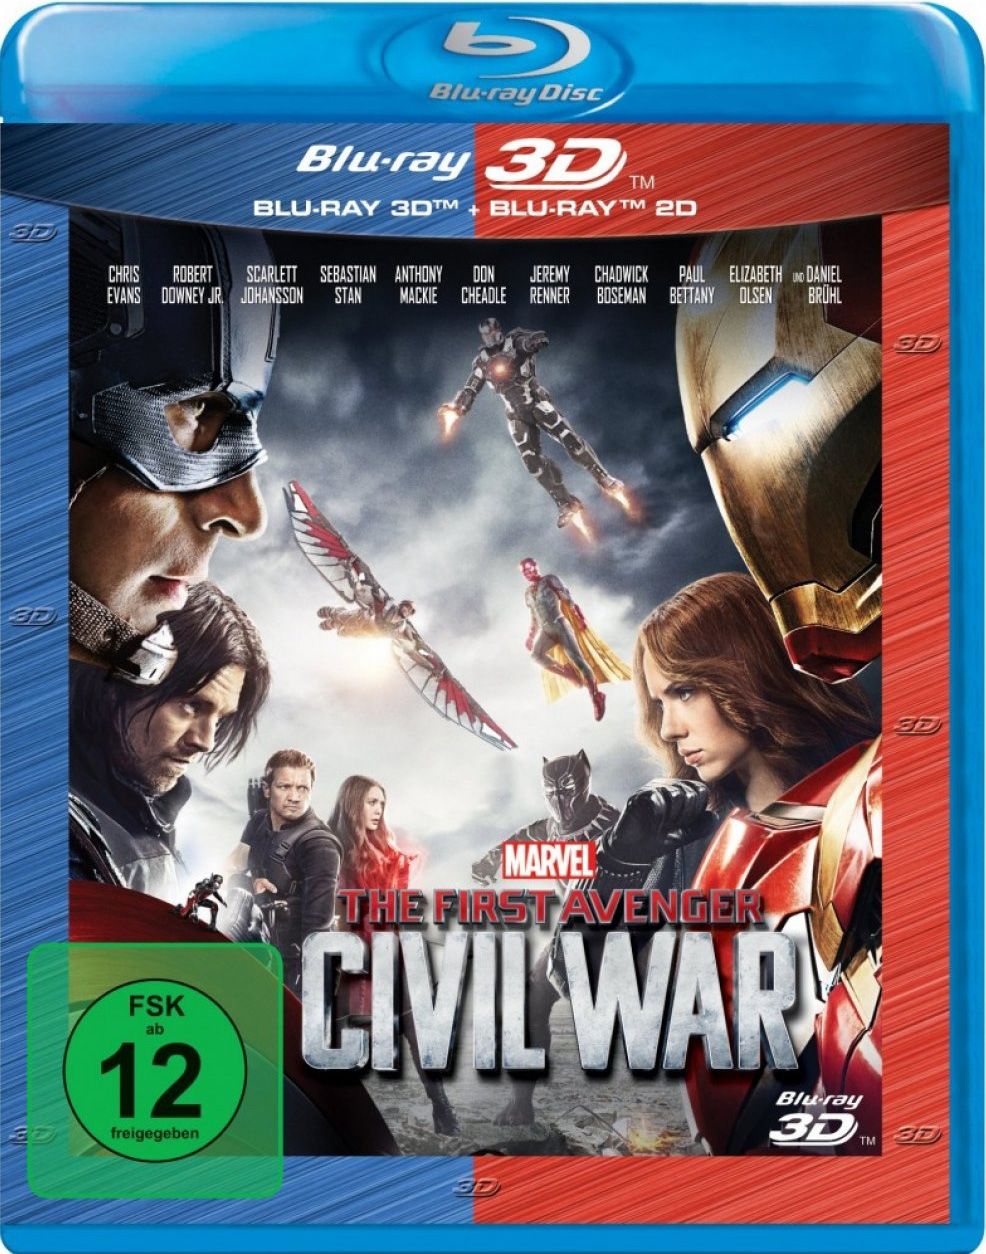 First Avenger 3D, The - Civil War (BLURAY 3D + BLURAY)